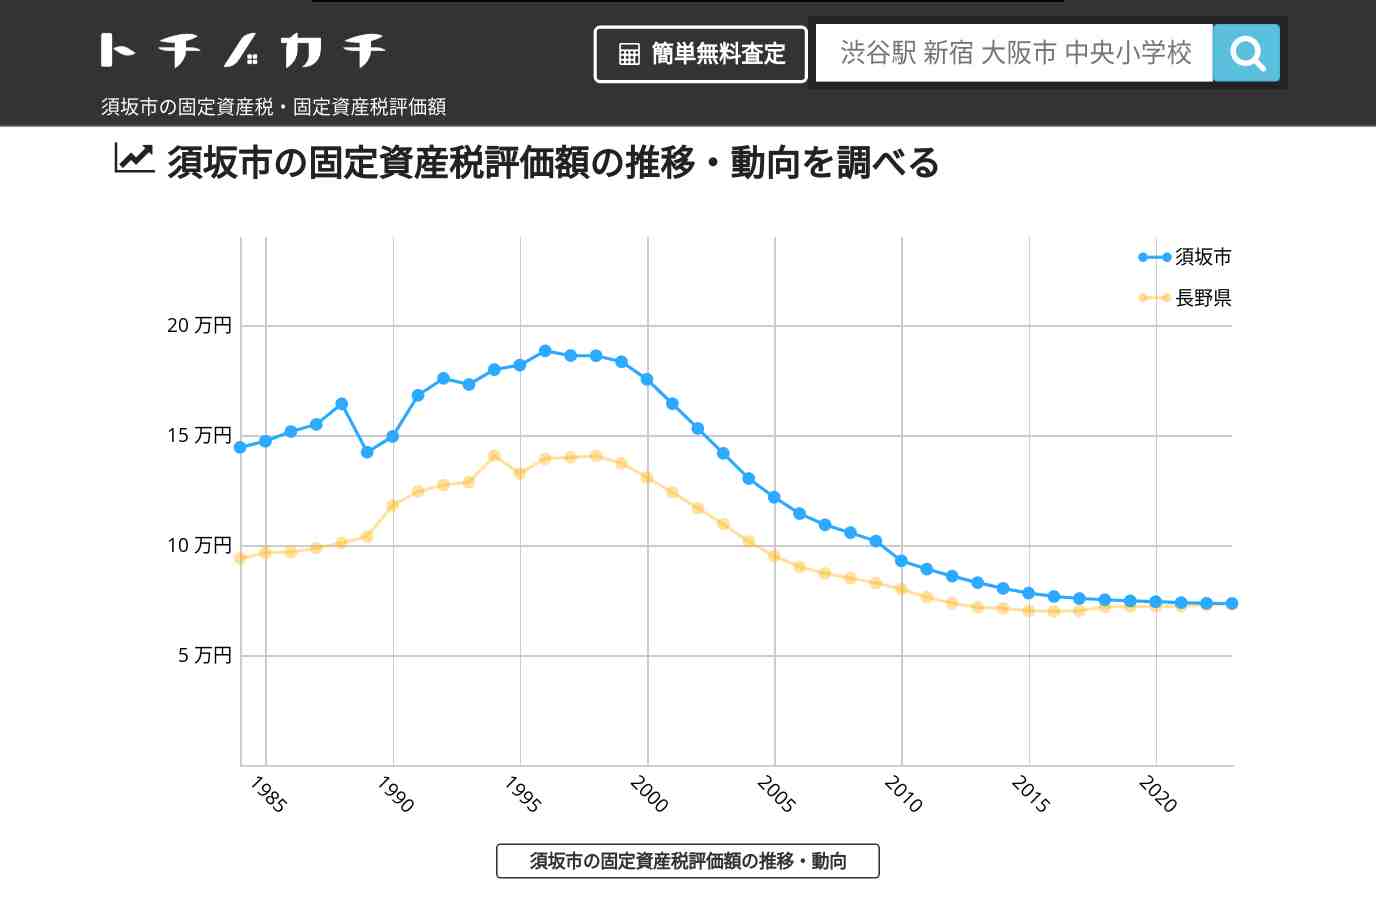 日野小学校(長野県 須坂市)周辺の固定資産税・固定資産税評価額 | トチノカチ